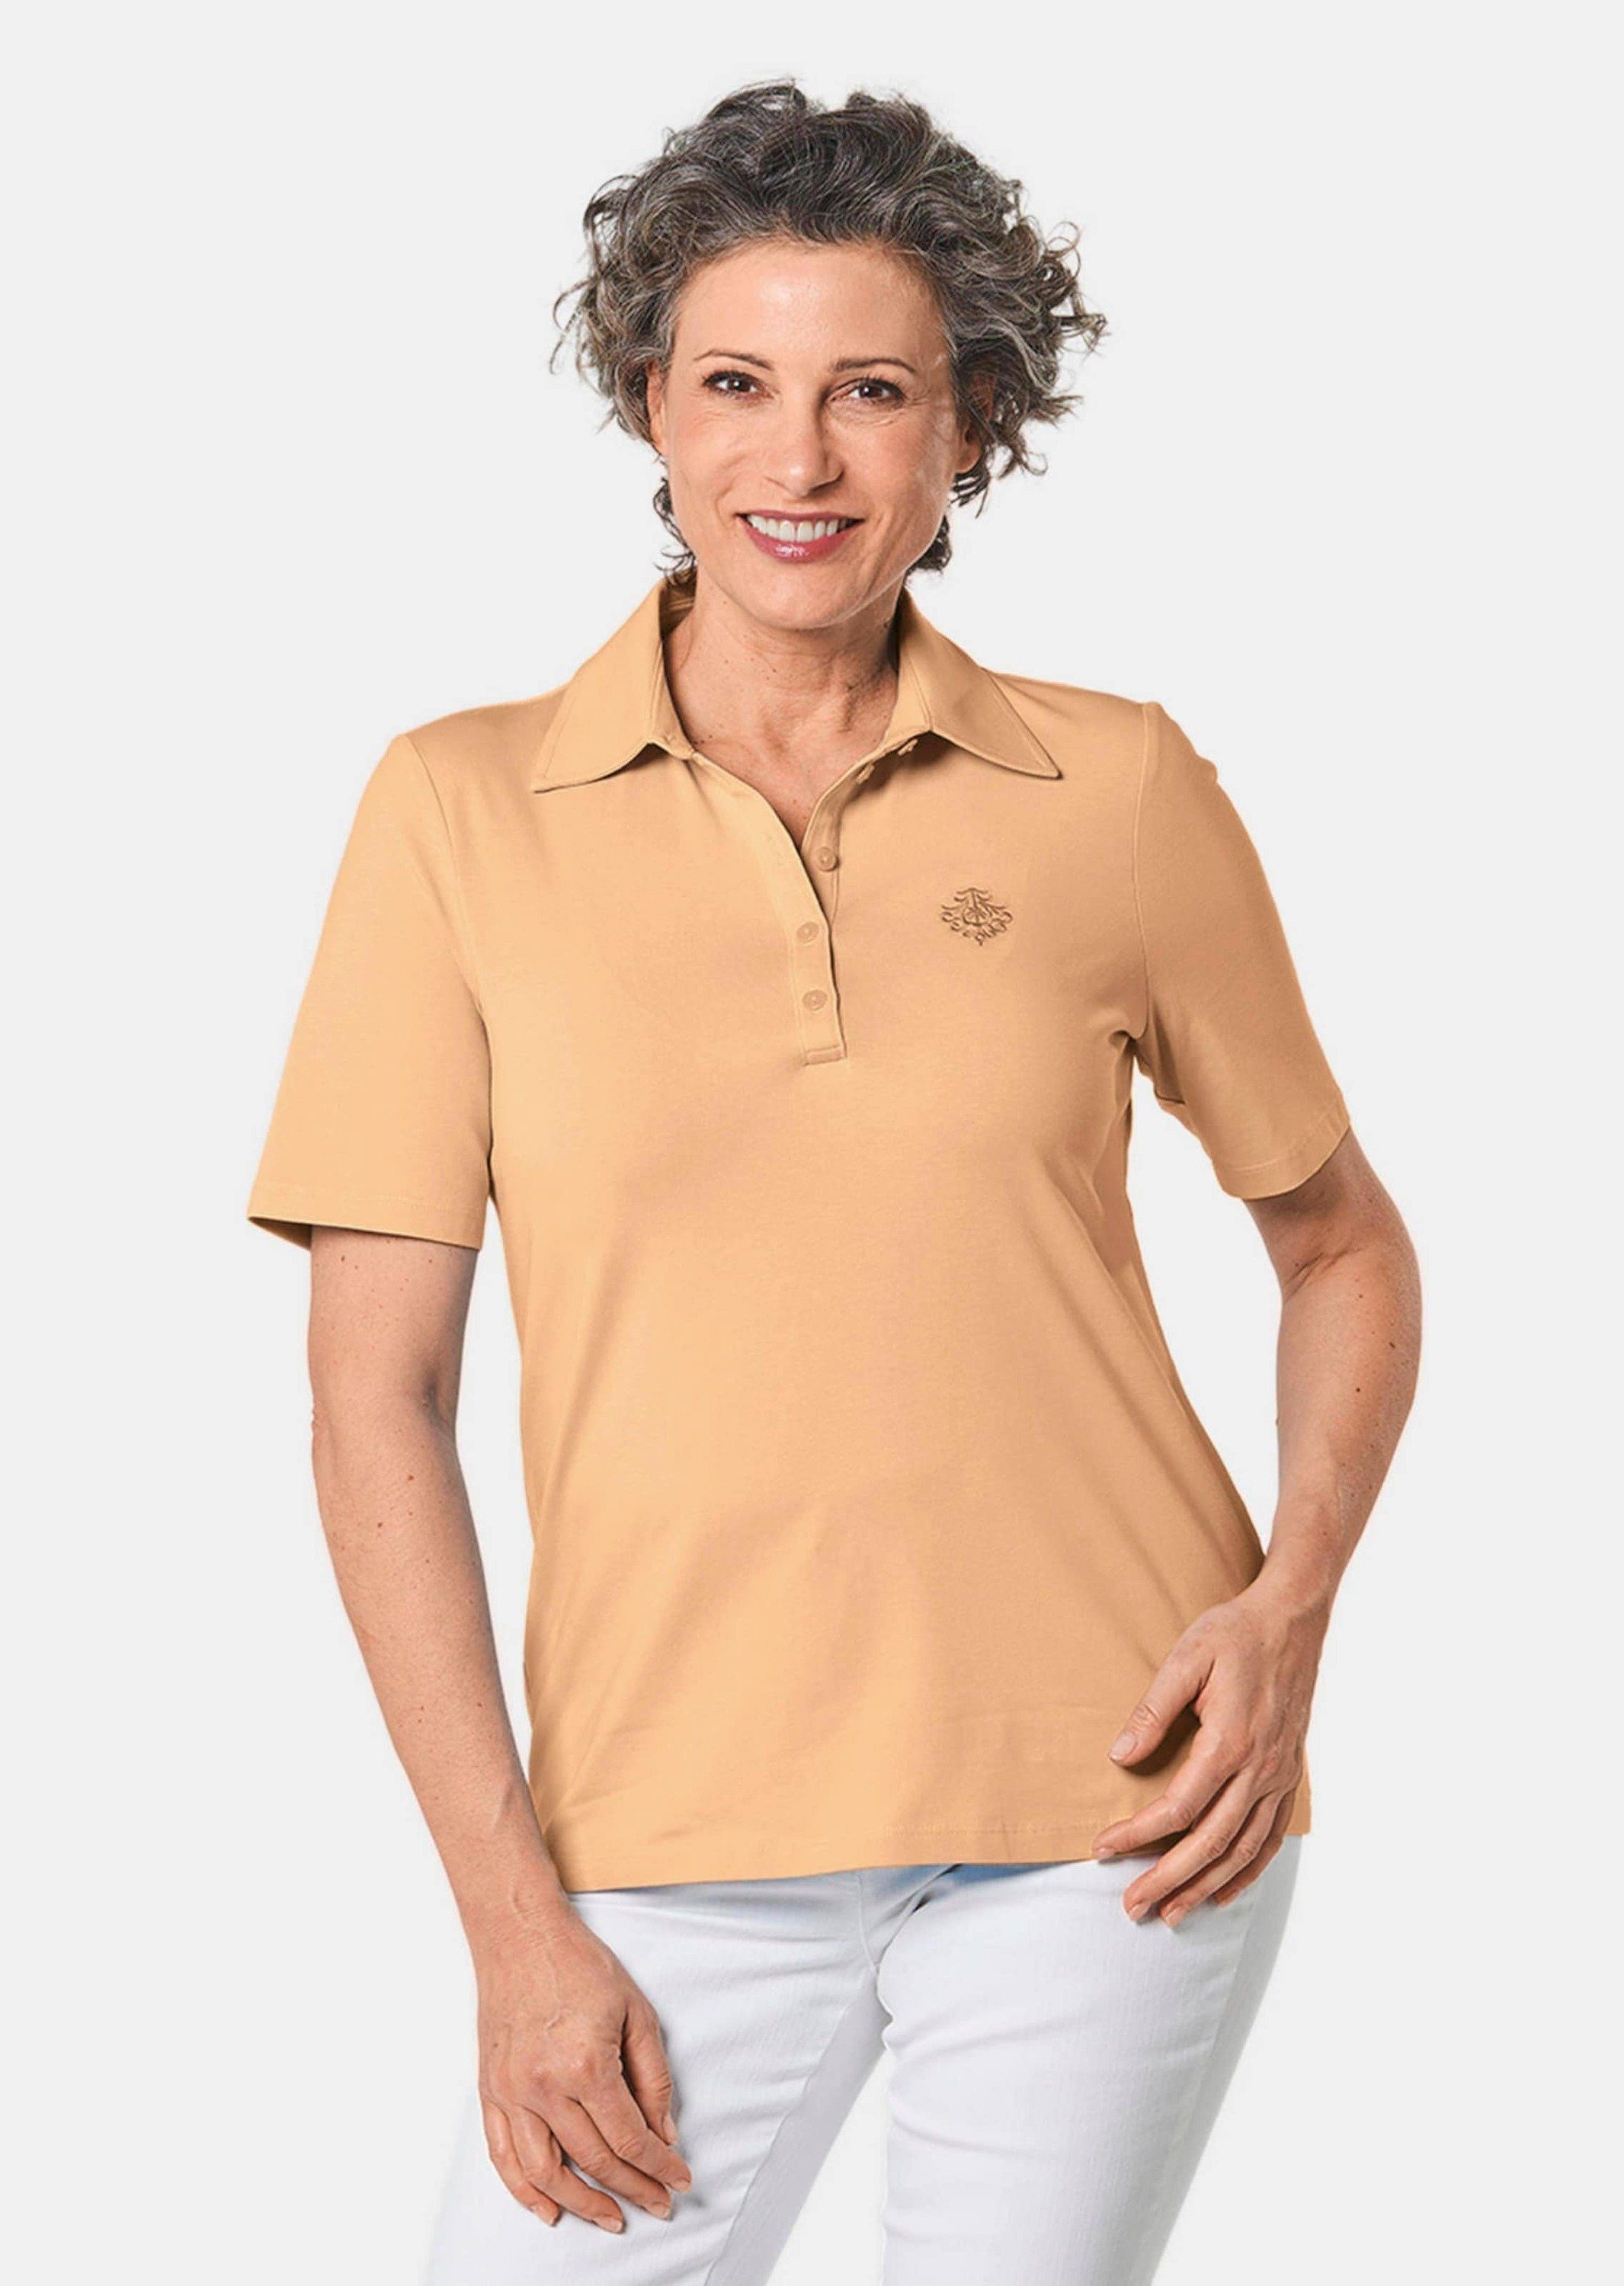 Stretchbequemes Kurzgröße: Poloshirt GOLDNER melba Poloshirt